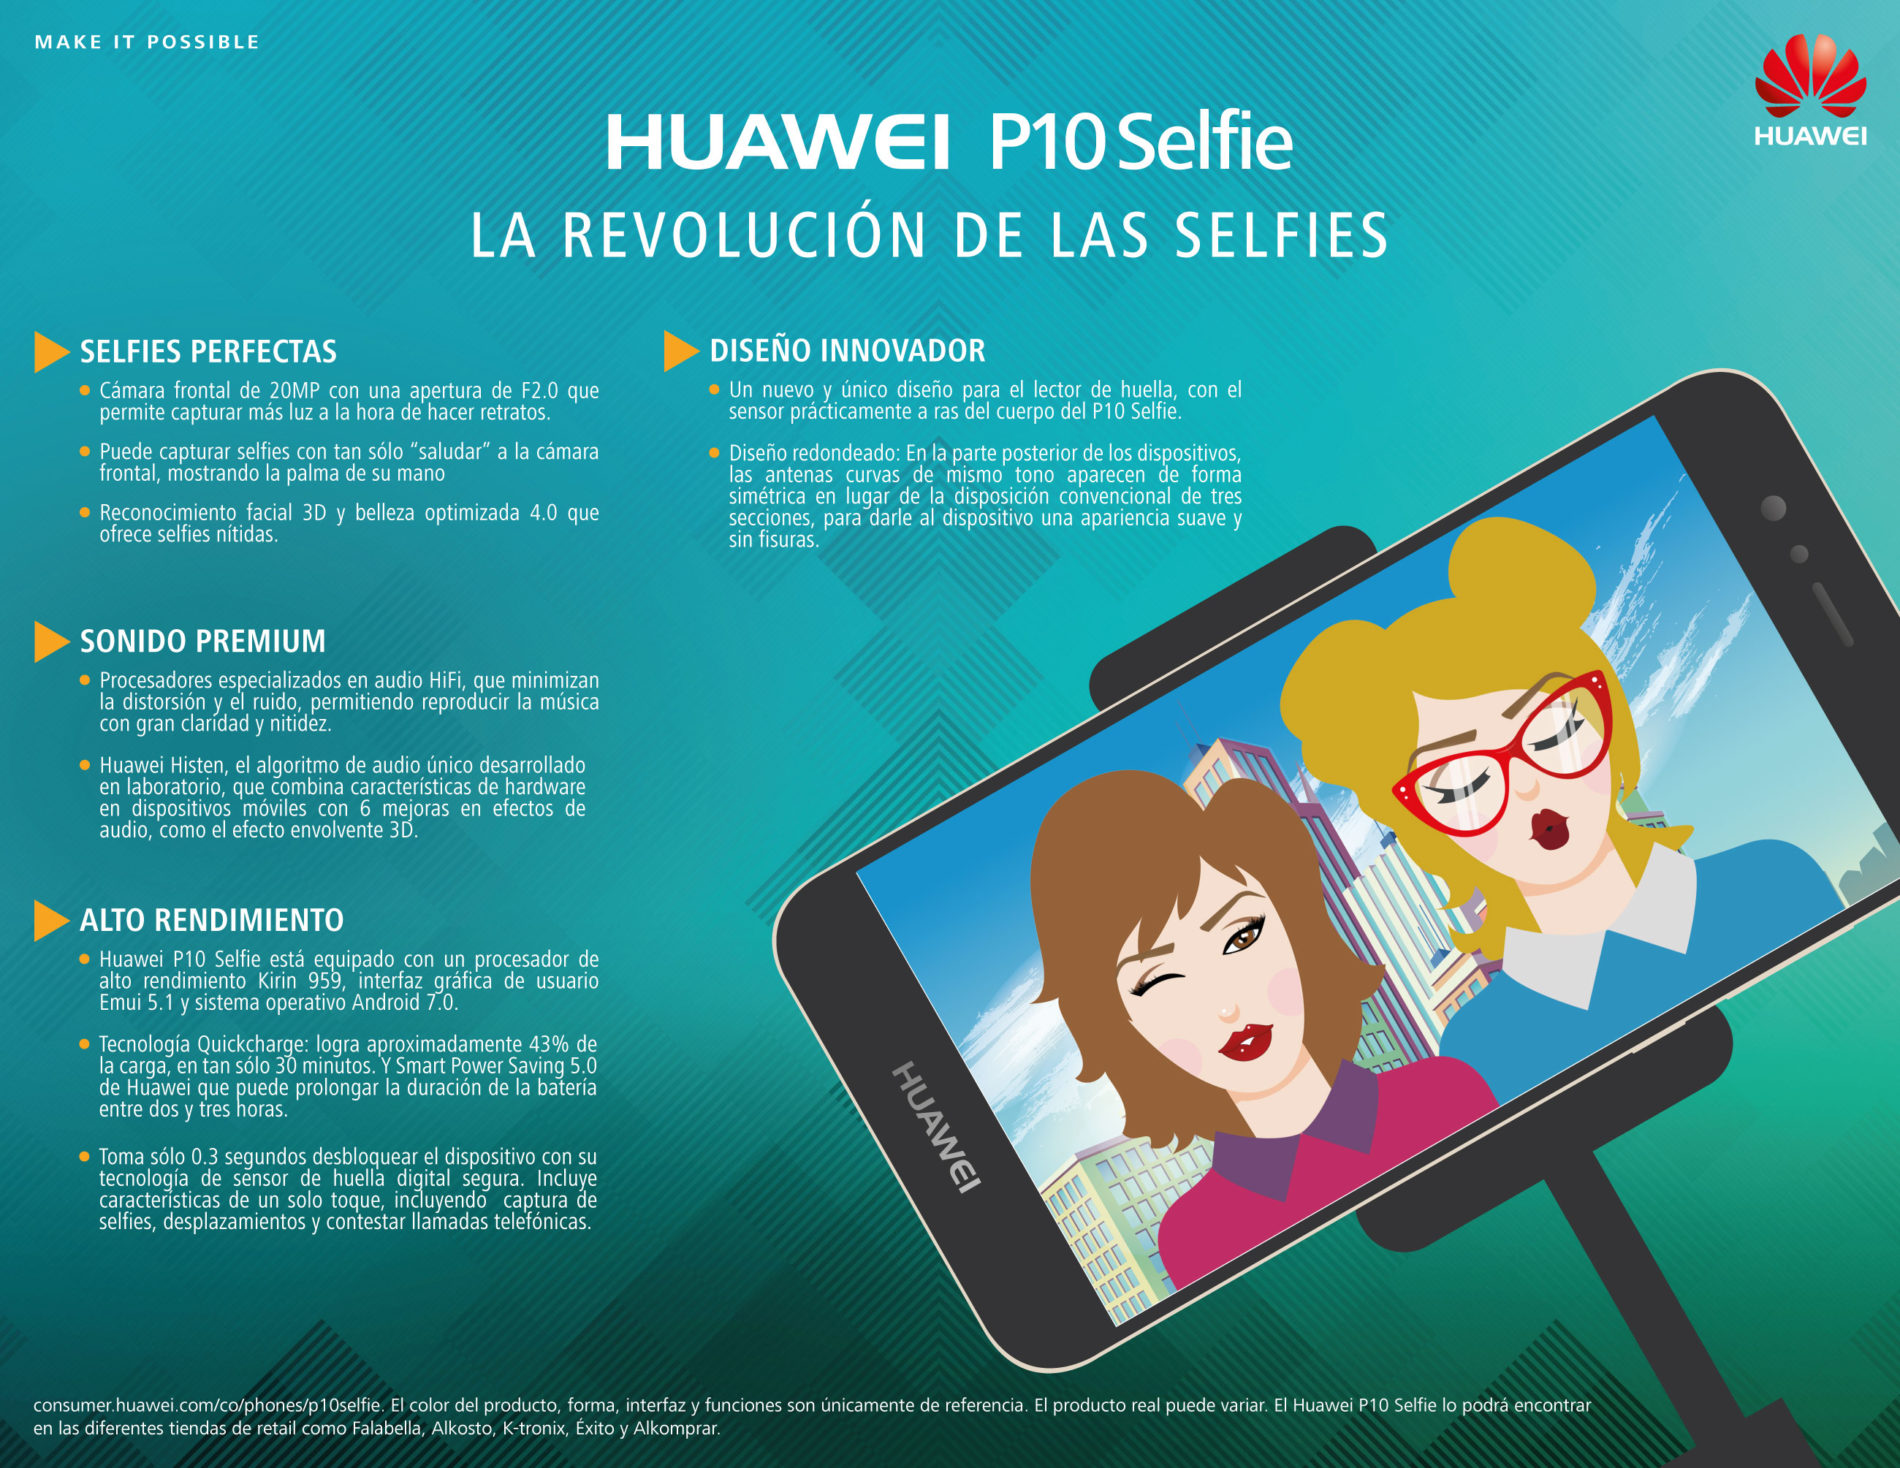 La selfie perfecta es una realidad con el nuevo Huawei P10 Selfie